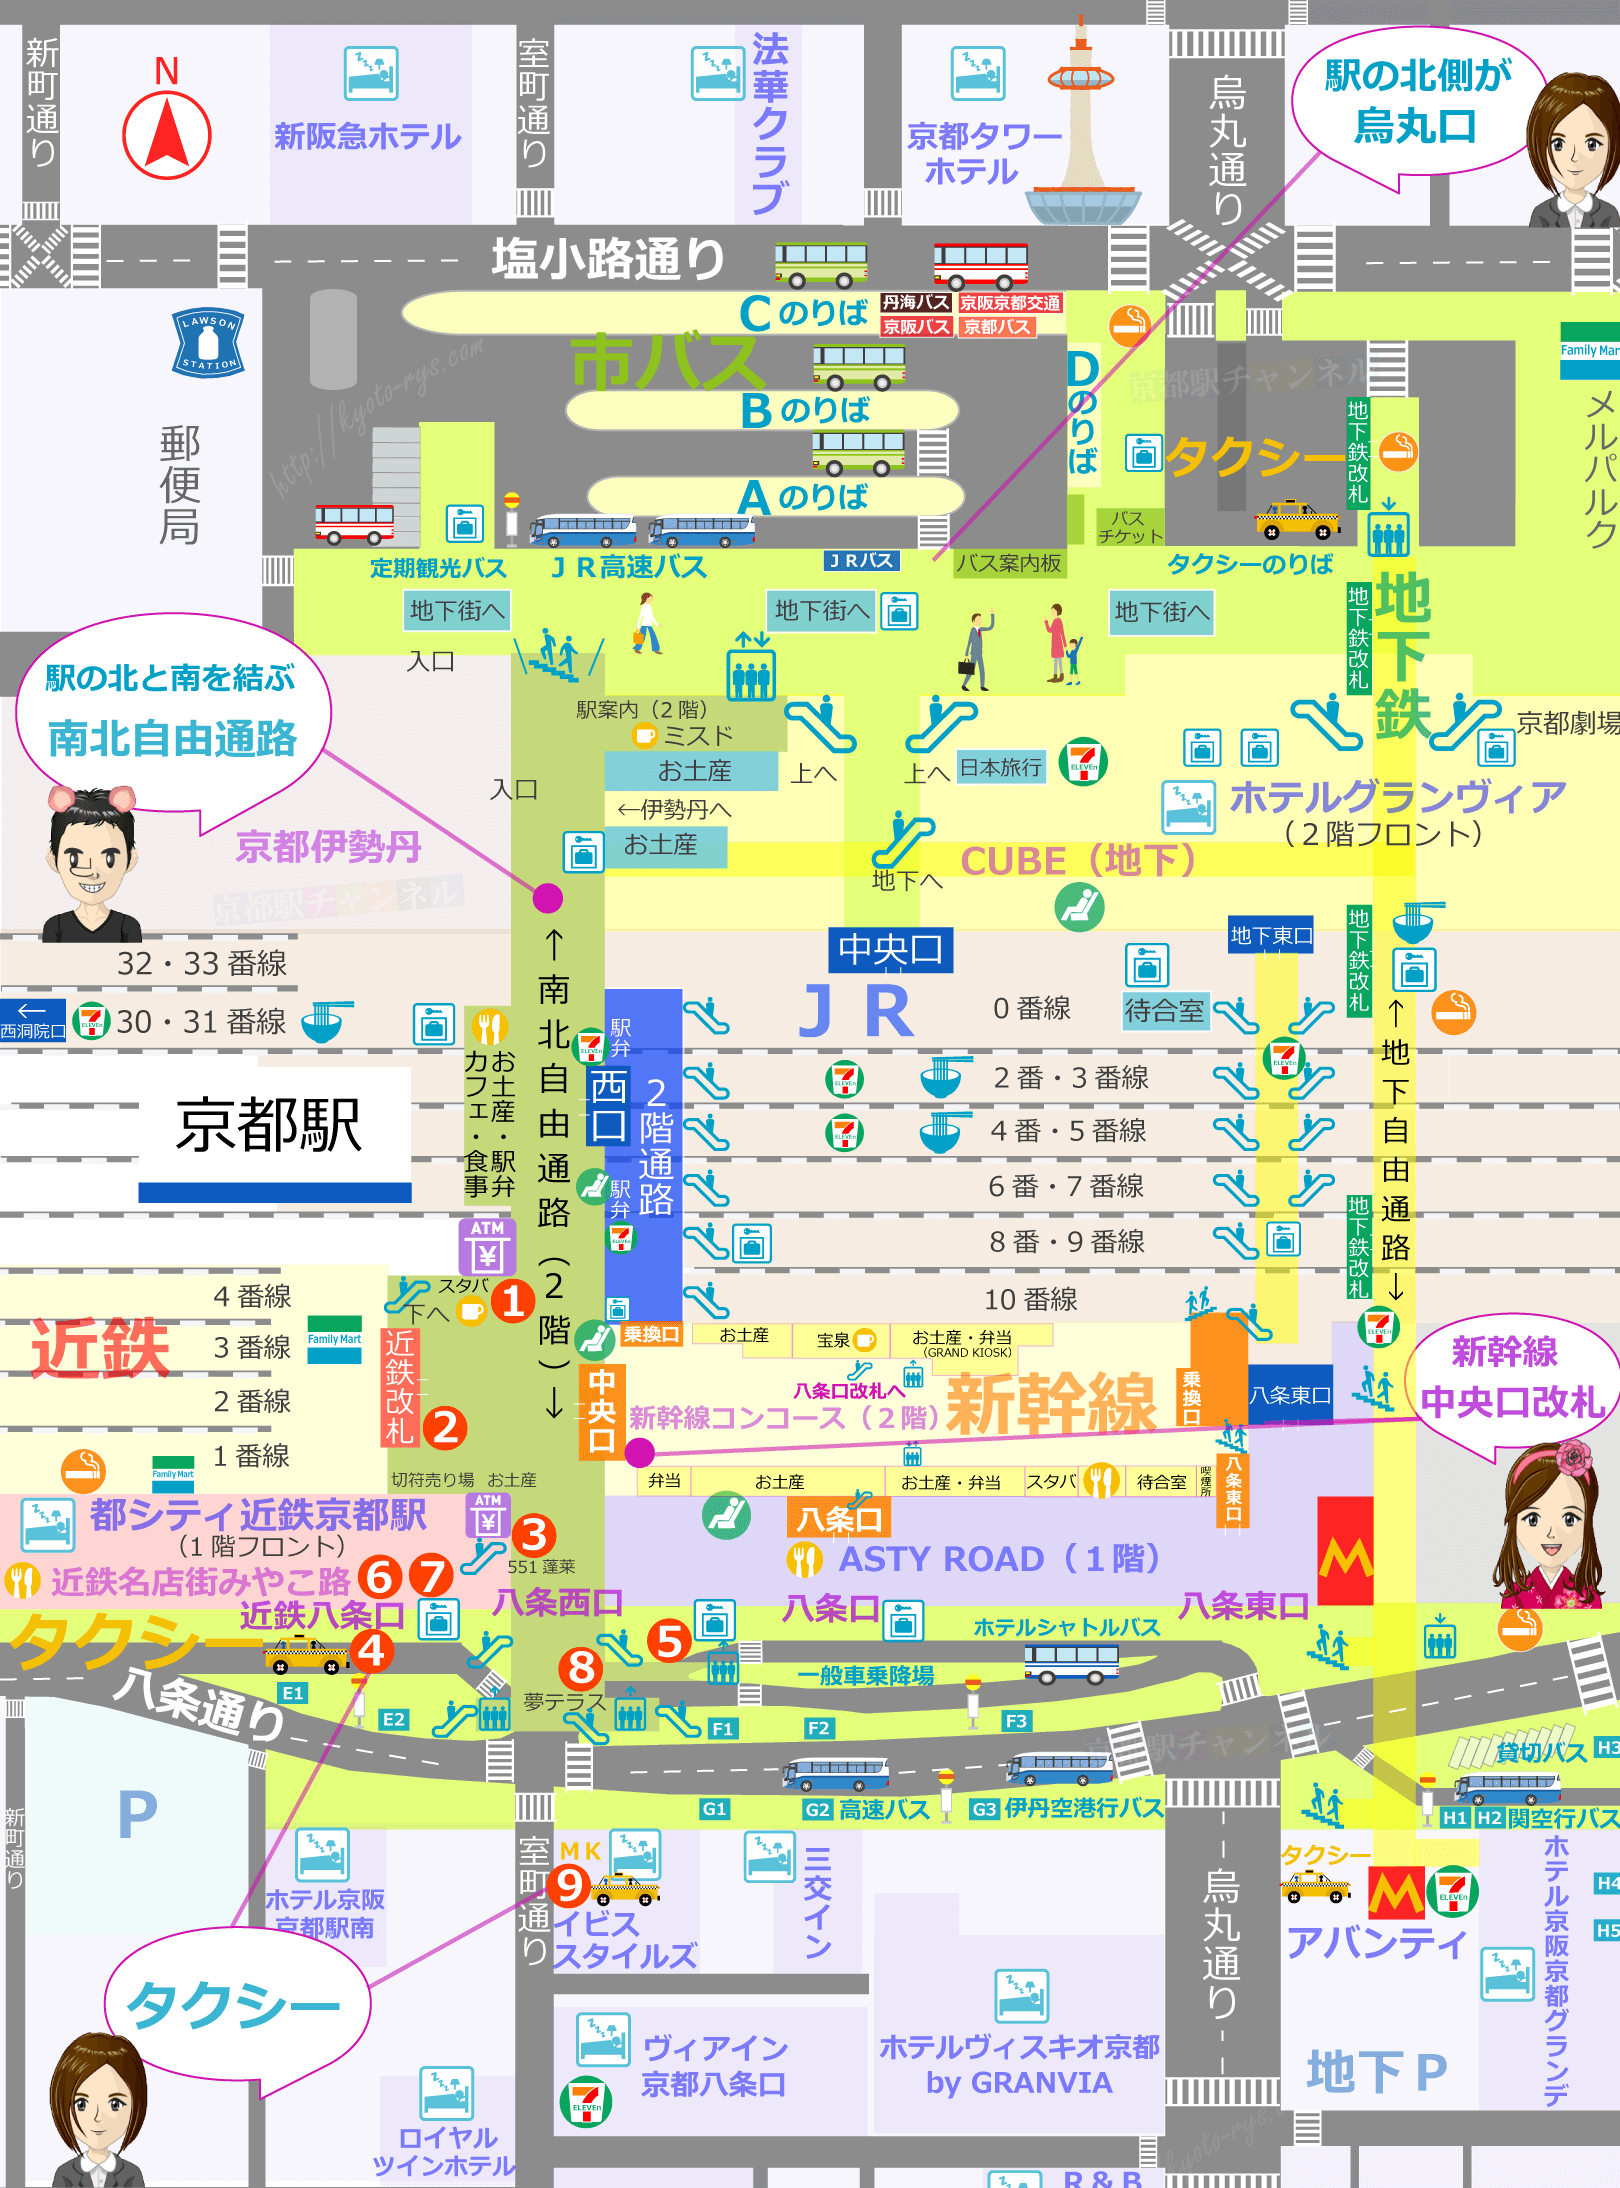 京都駅の構内図と新幹線中央口のマップ